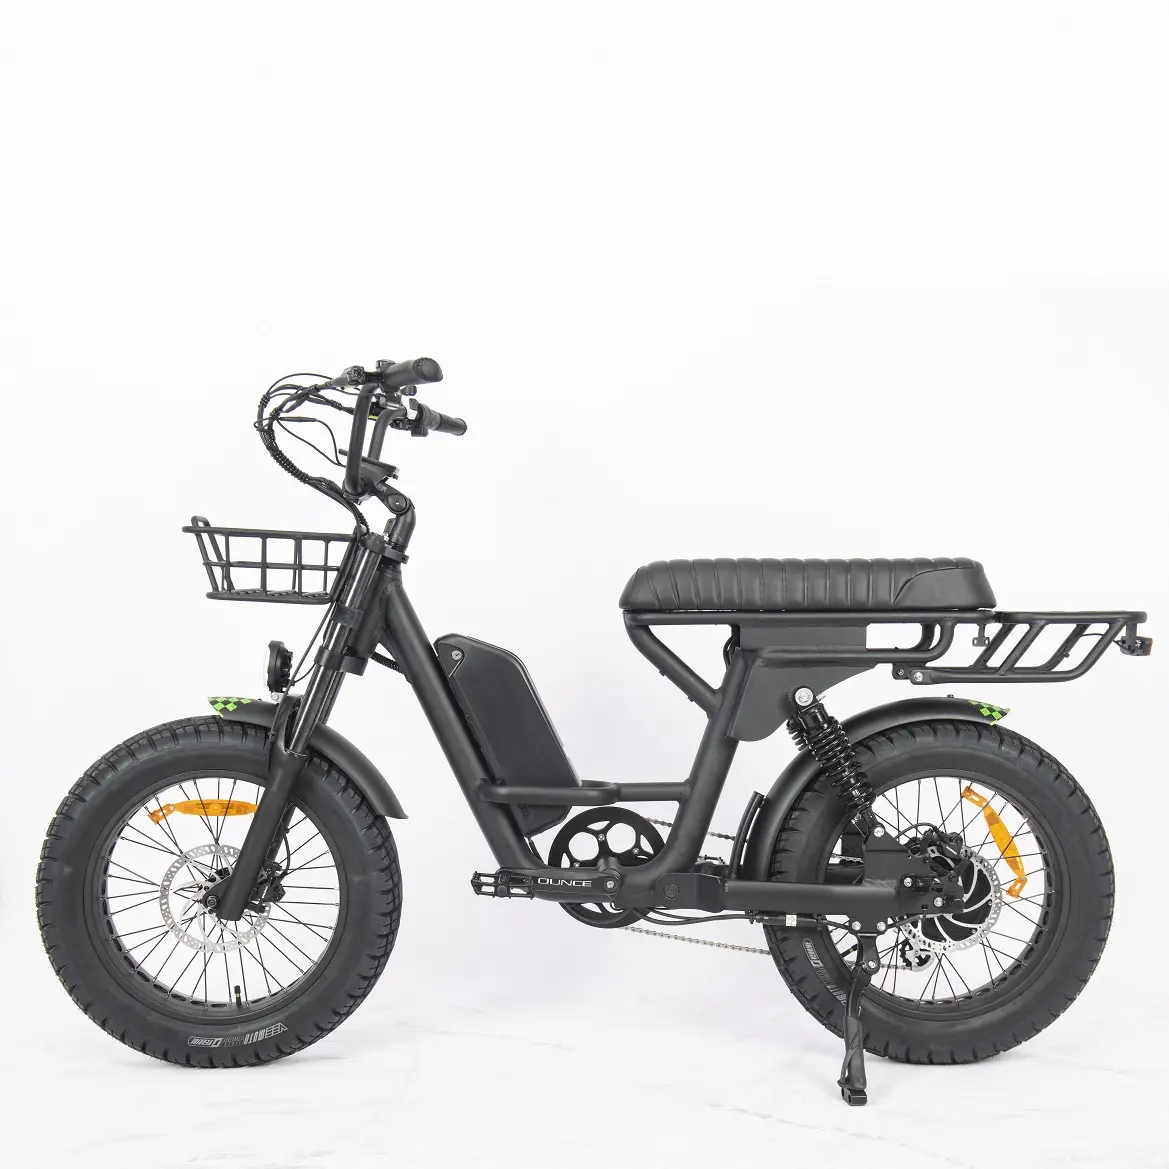 20 pollici nuovo stile grande sella elettrico bici grasso pneumatico a doppia sospensione bici elettrica ibrida elettrica per gli uomini adulti